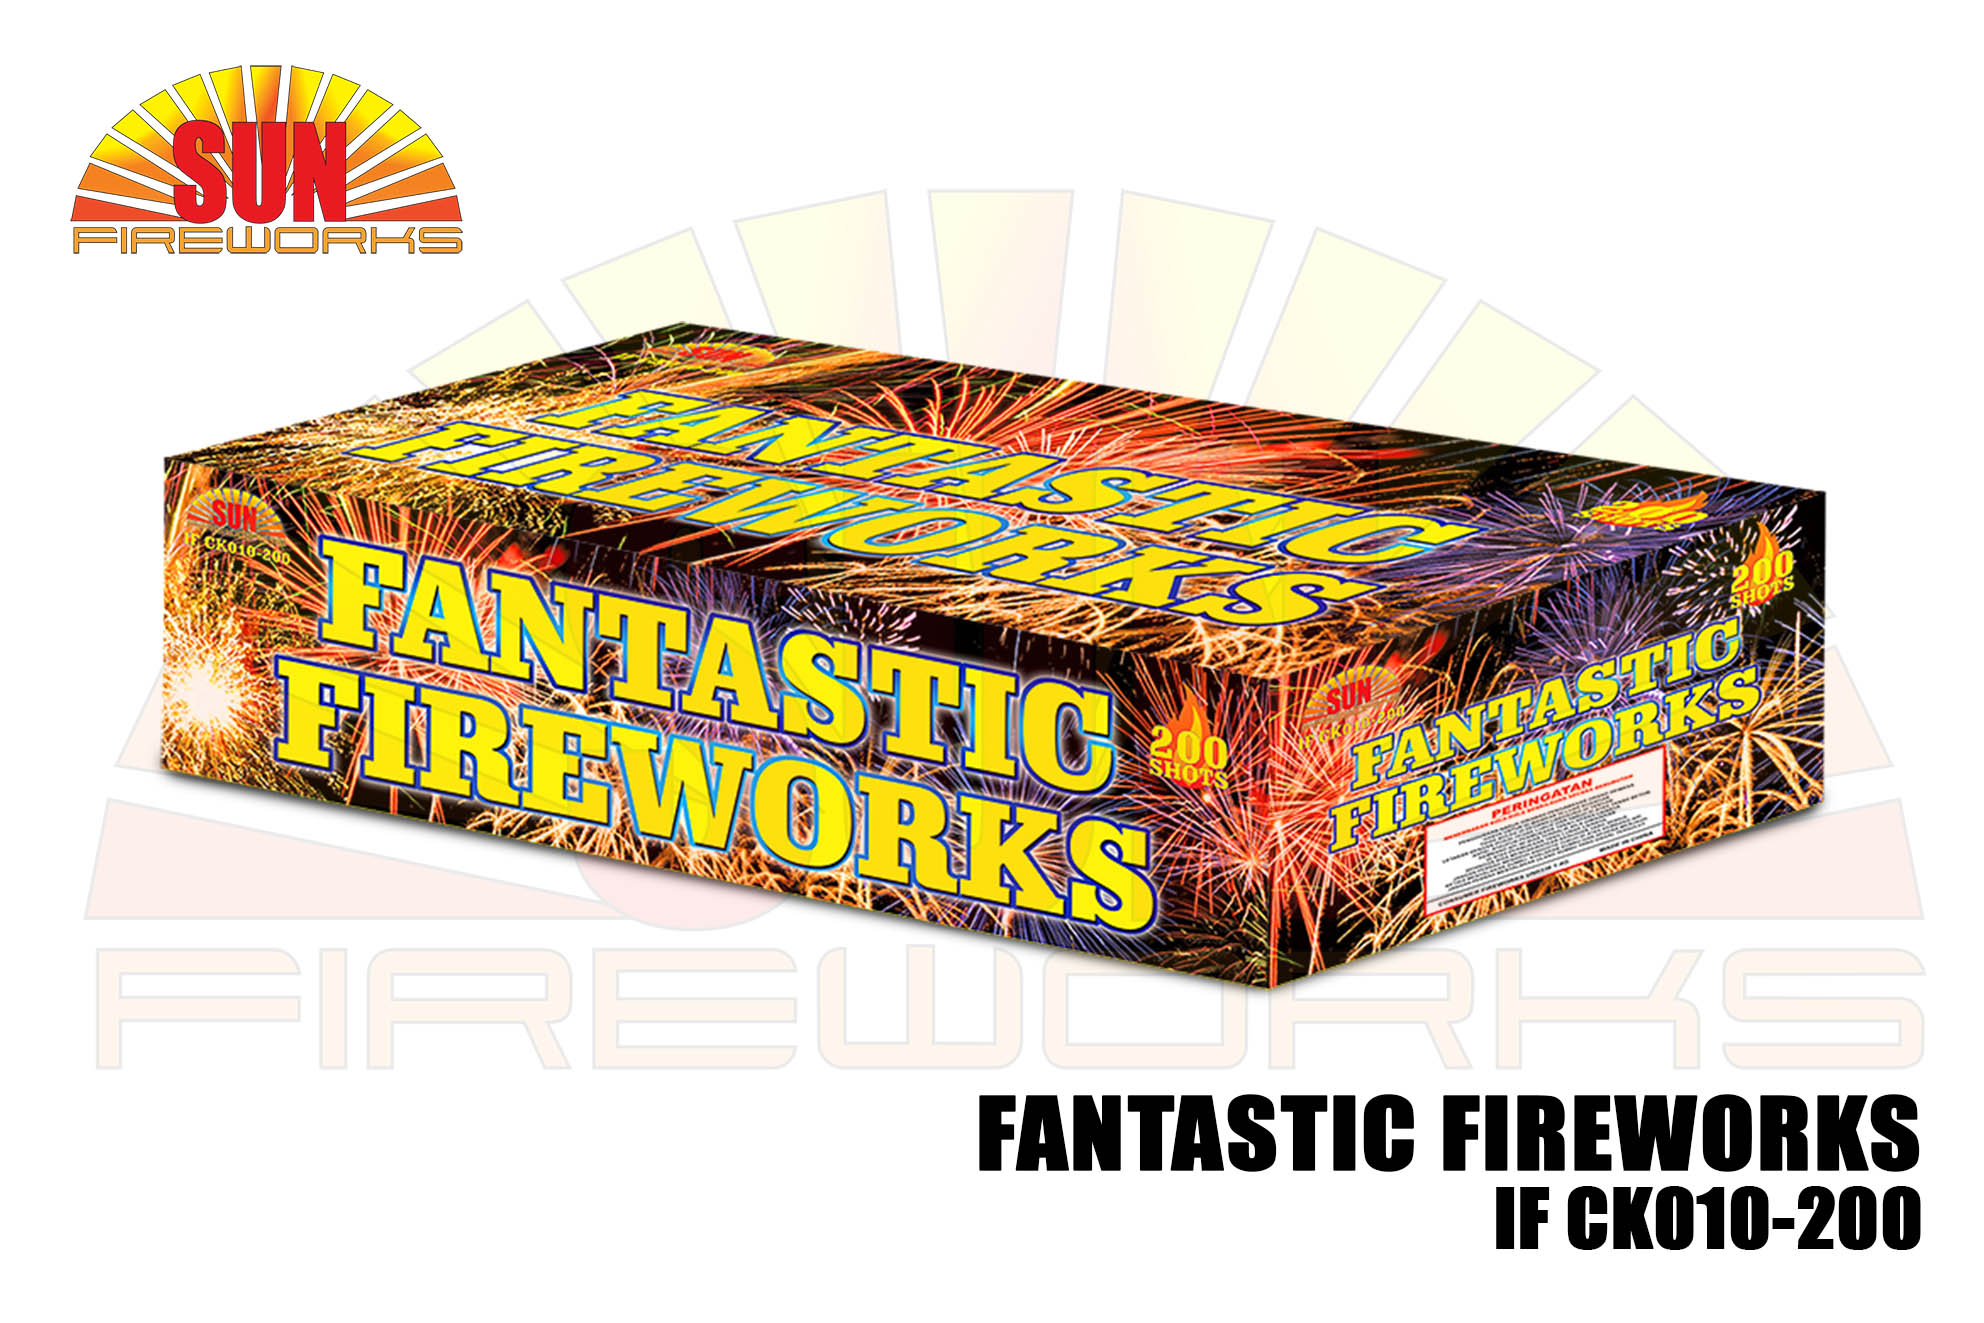 FANTASTIC FIREWORKS IF CK010-200